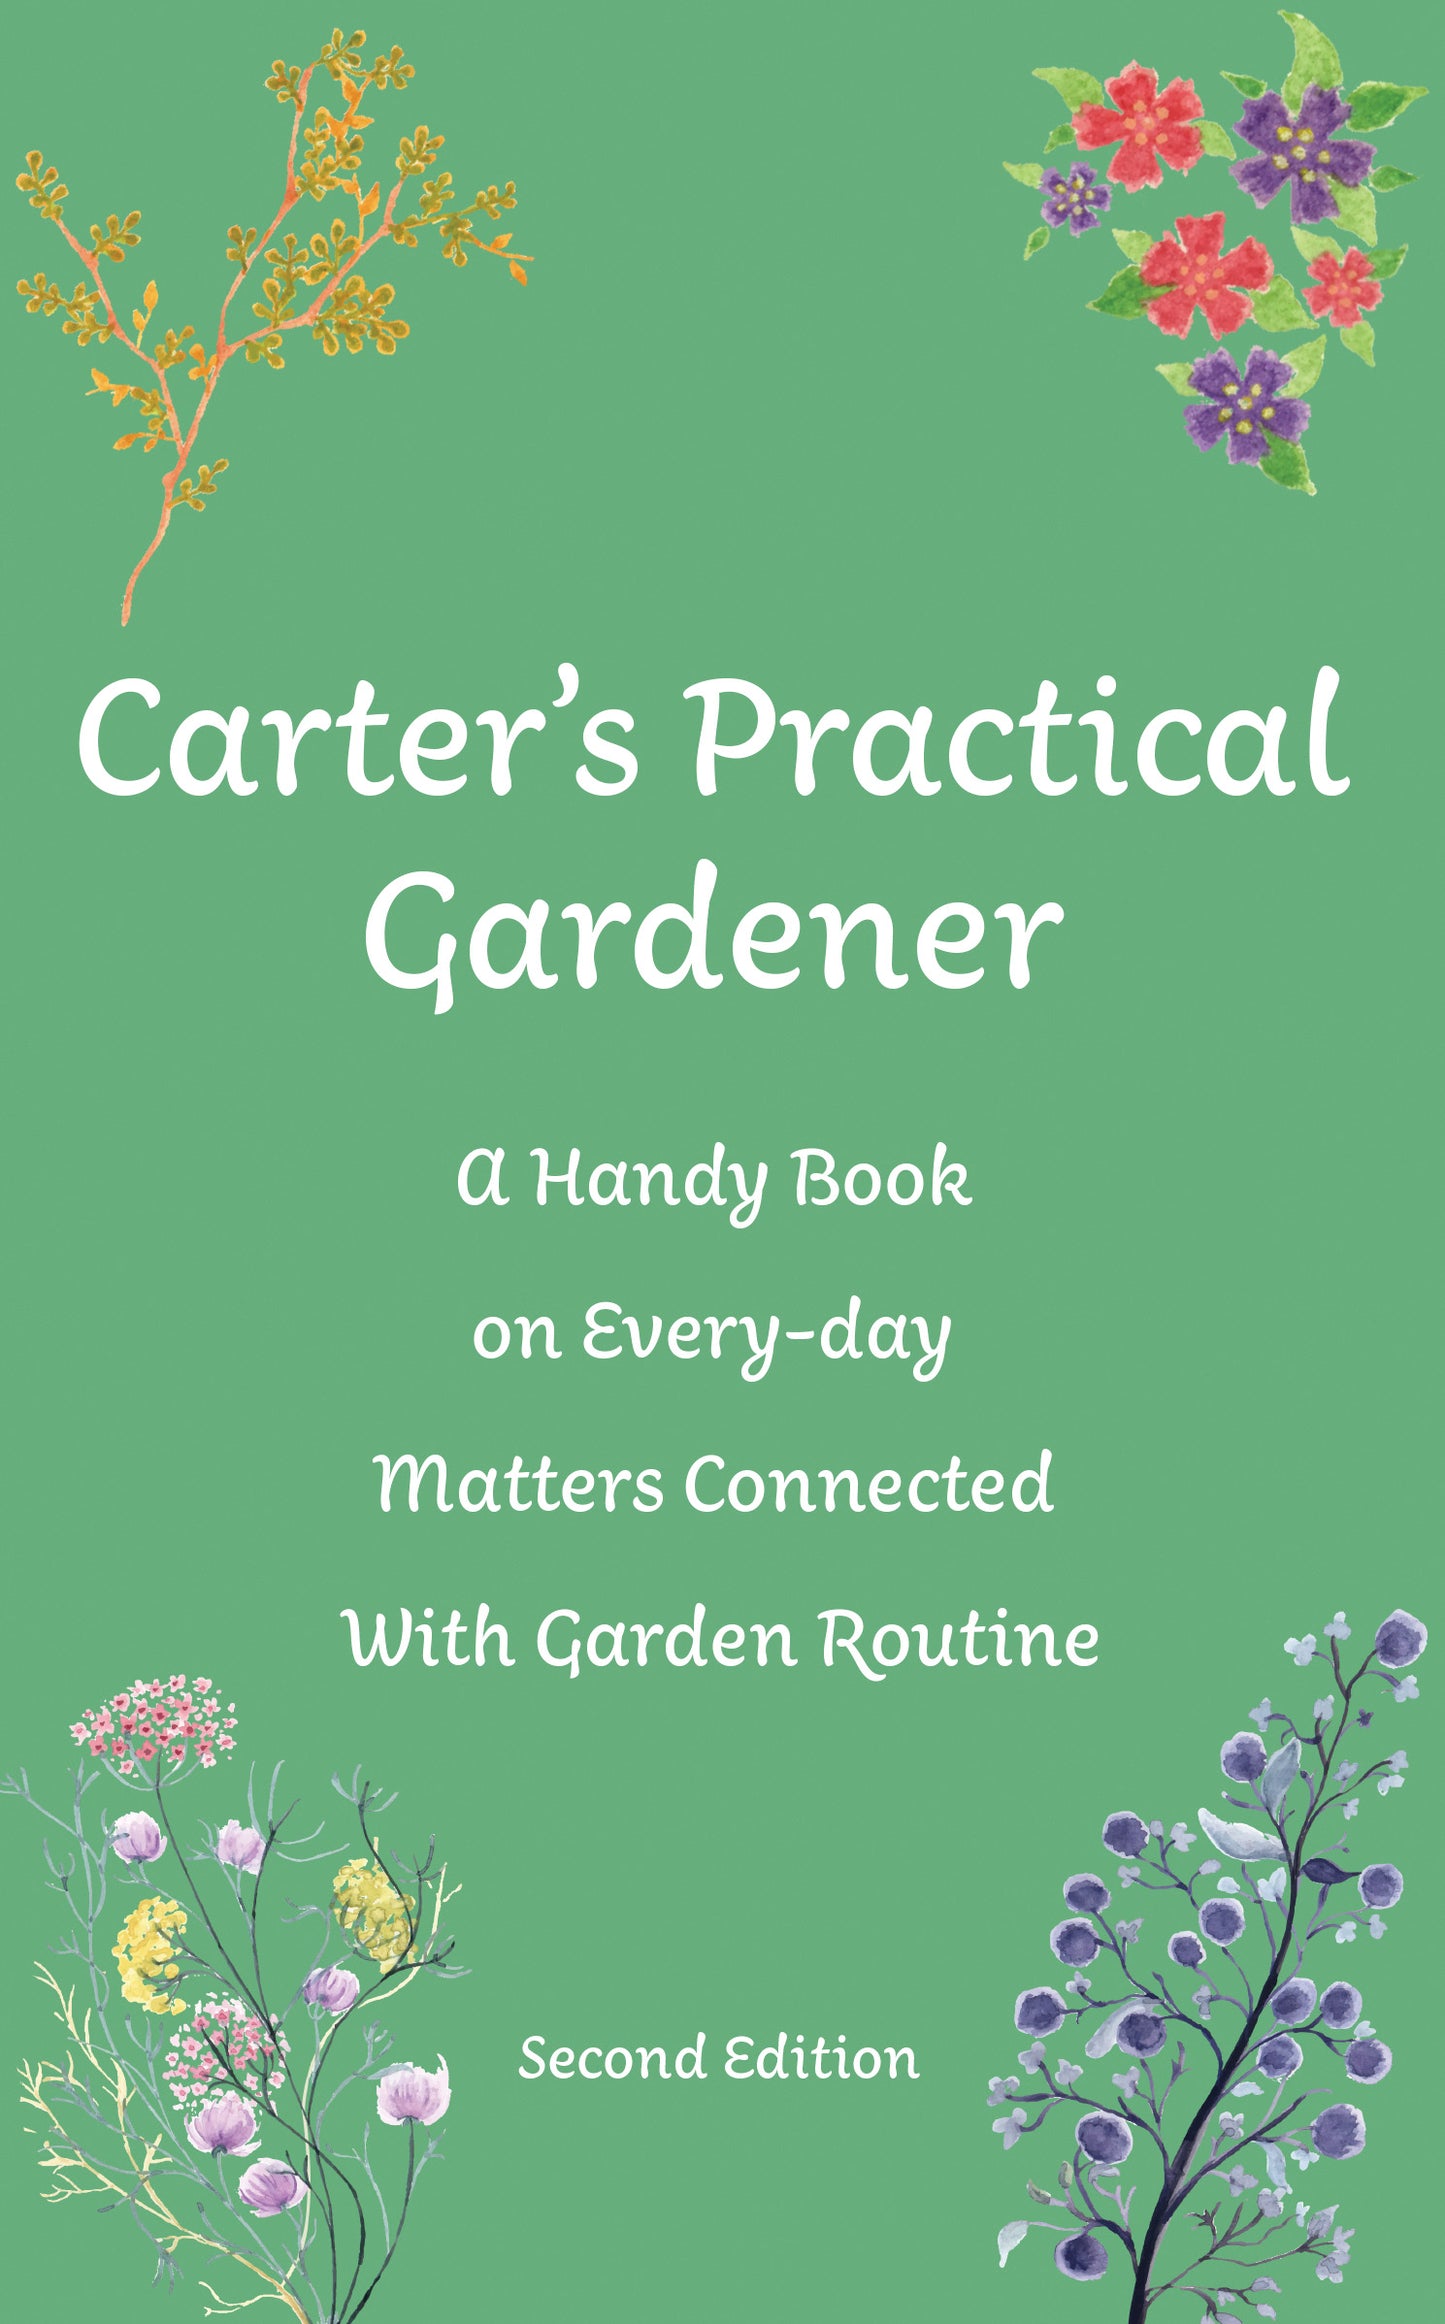 Carter's Practical Gardener